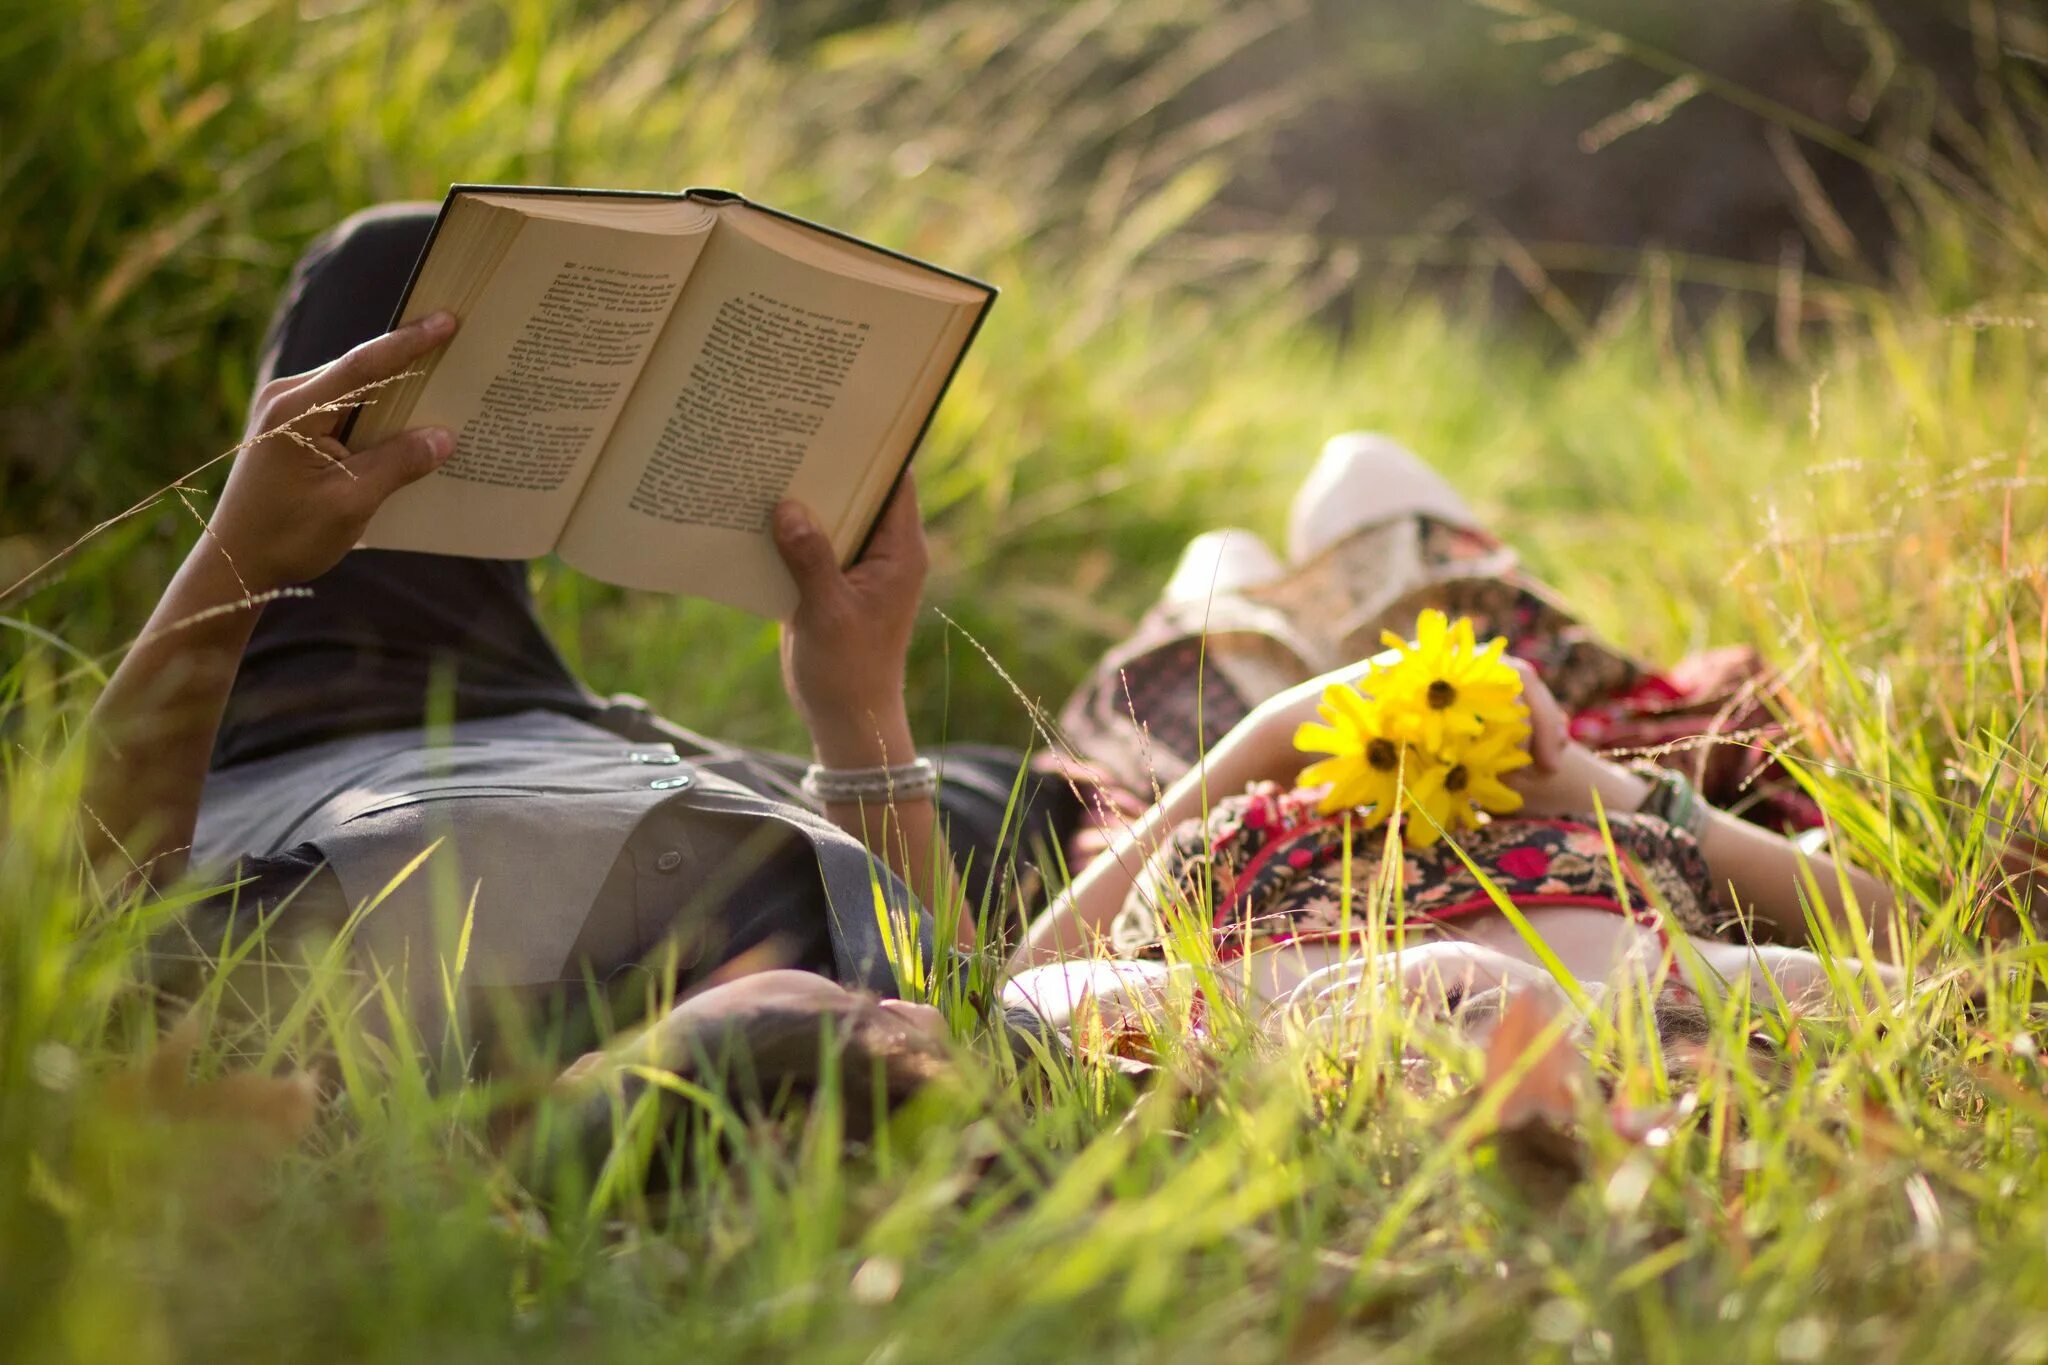 Чтение на природе. Фотосессия с книгой на природе. Человек и природа. Девочка с книжкой на траве.